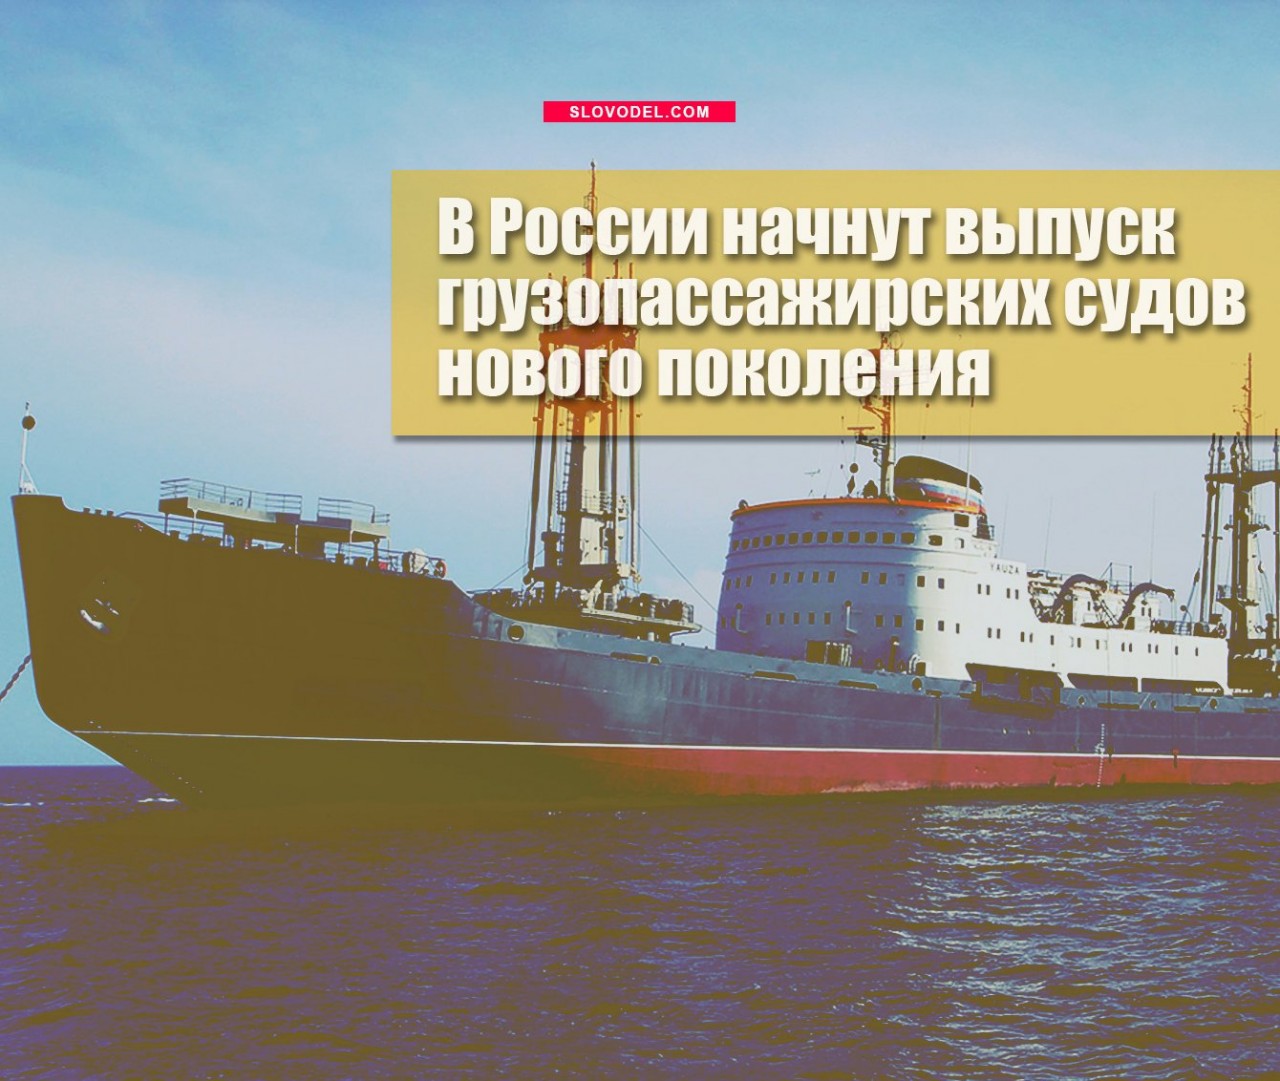 В России начнут выпуск грузопассажирских судов нового поколения